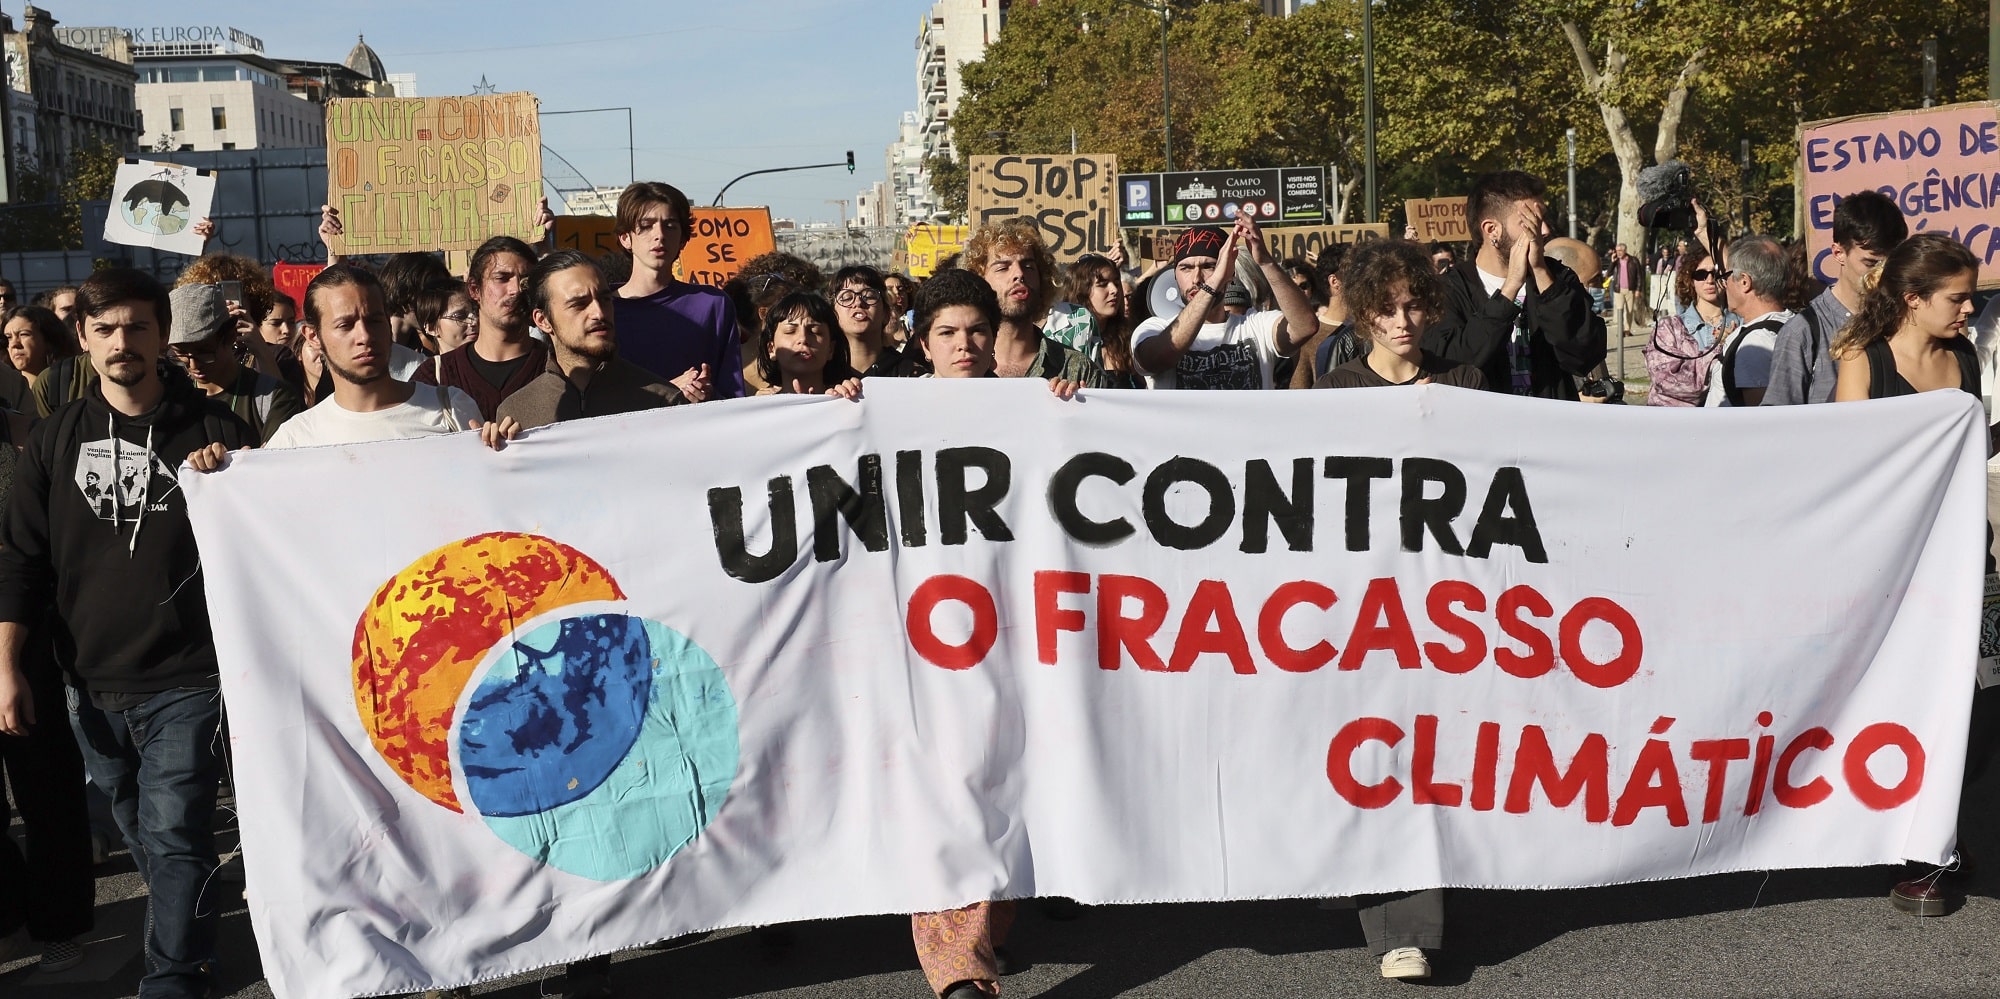 Μεγάλη διαδήλωση για το κλίμα στην Πορτογαλία